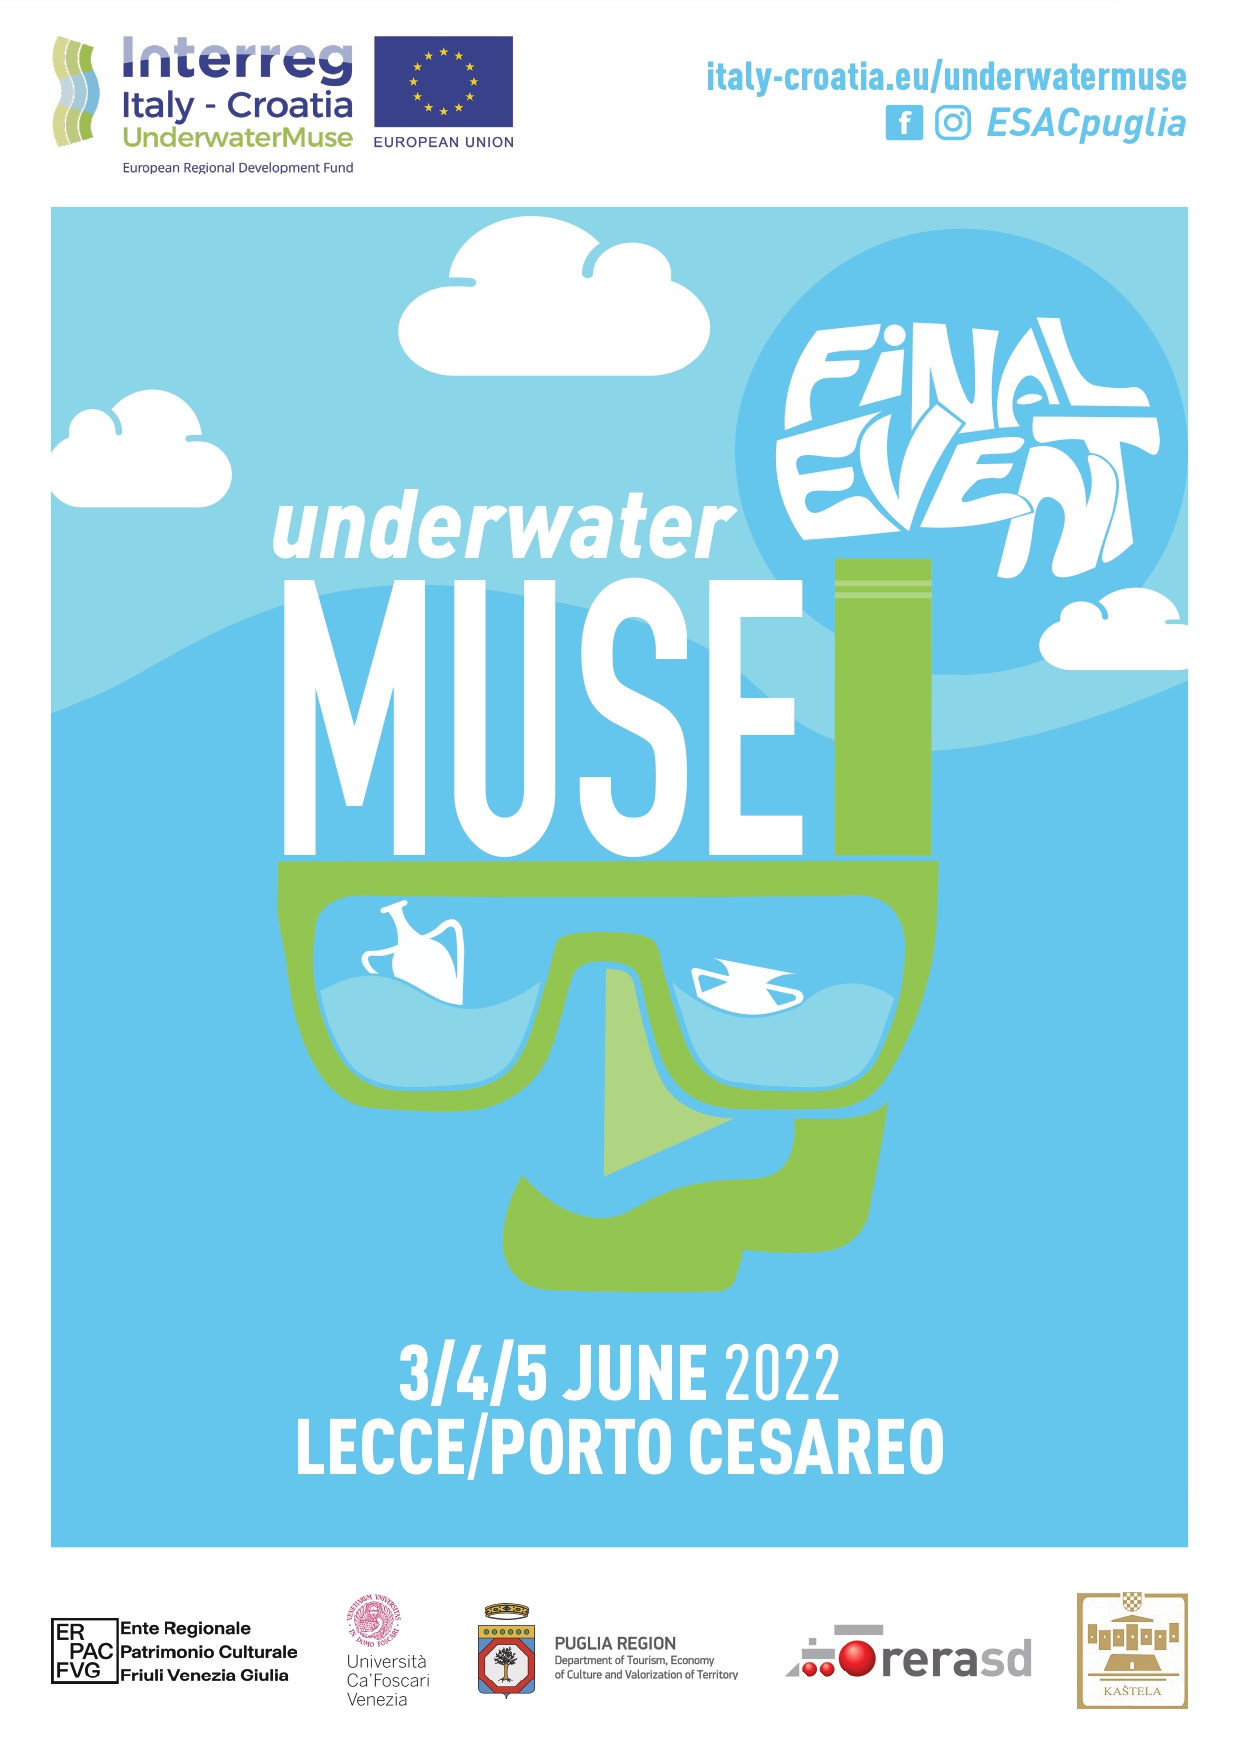 UnderwaterMuse Final event